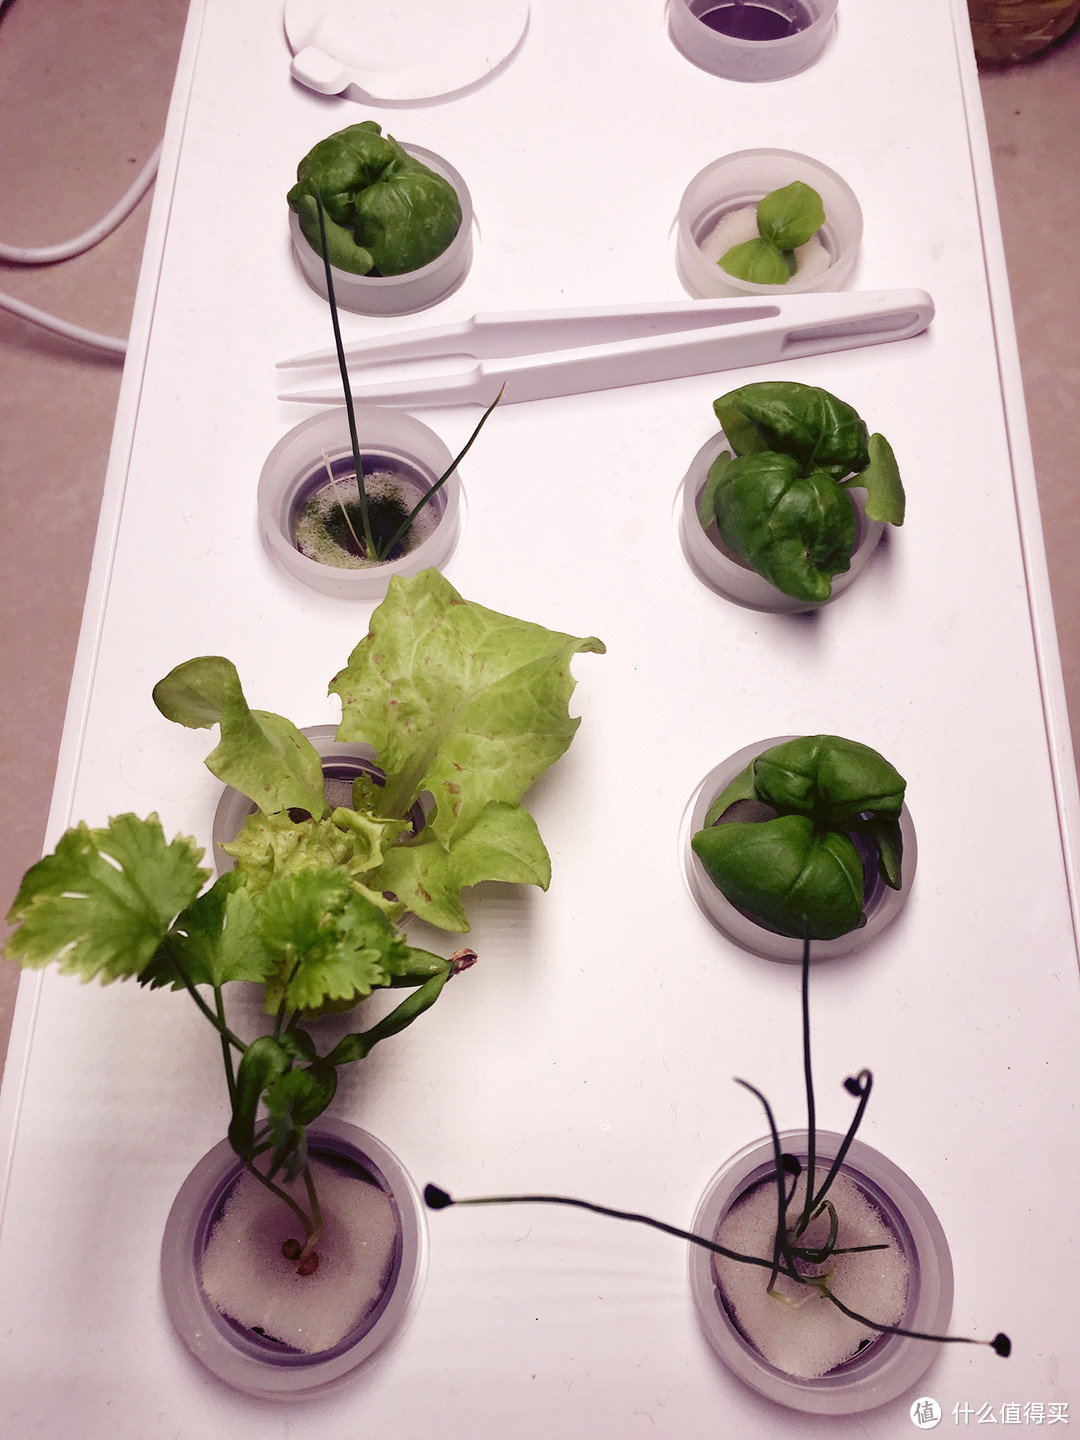 高颜值懒人种植机——芭比立方智能果蔬种植机测评